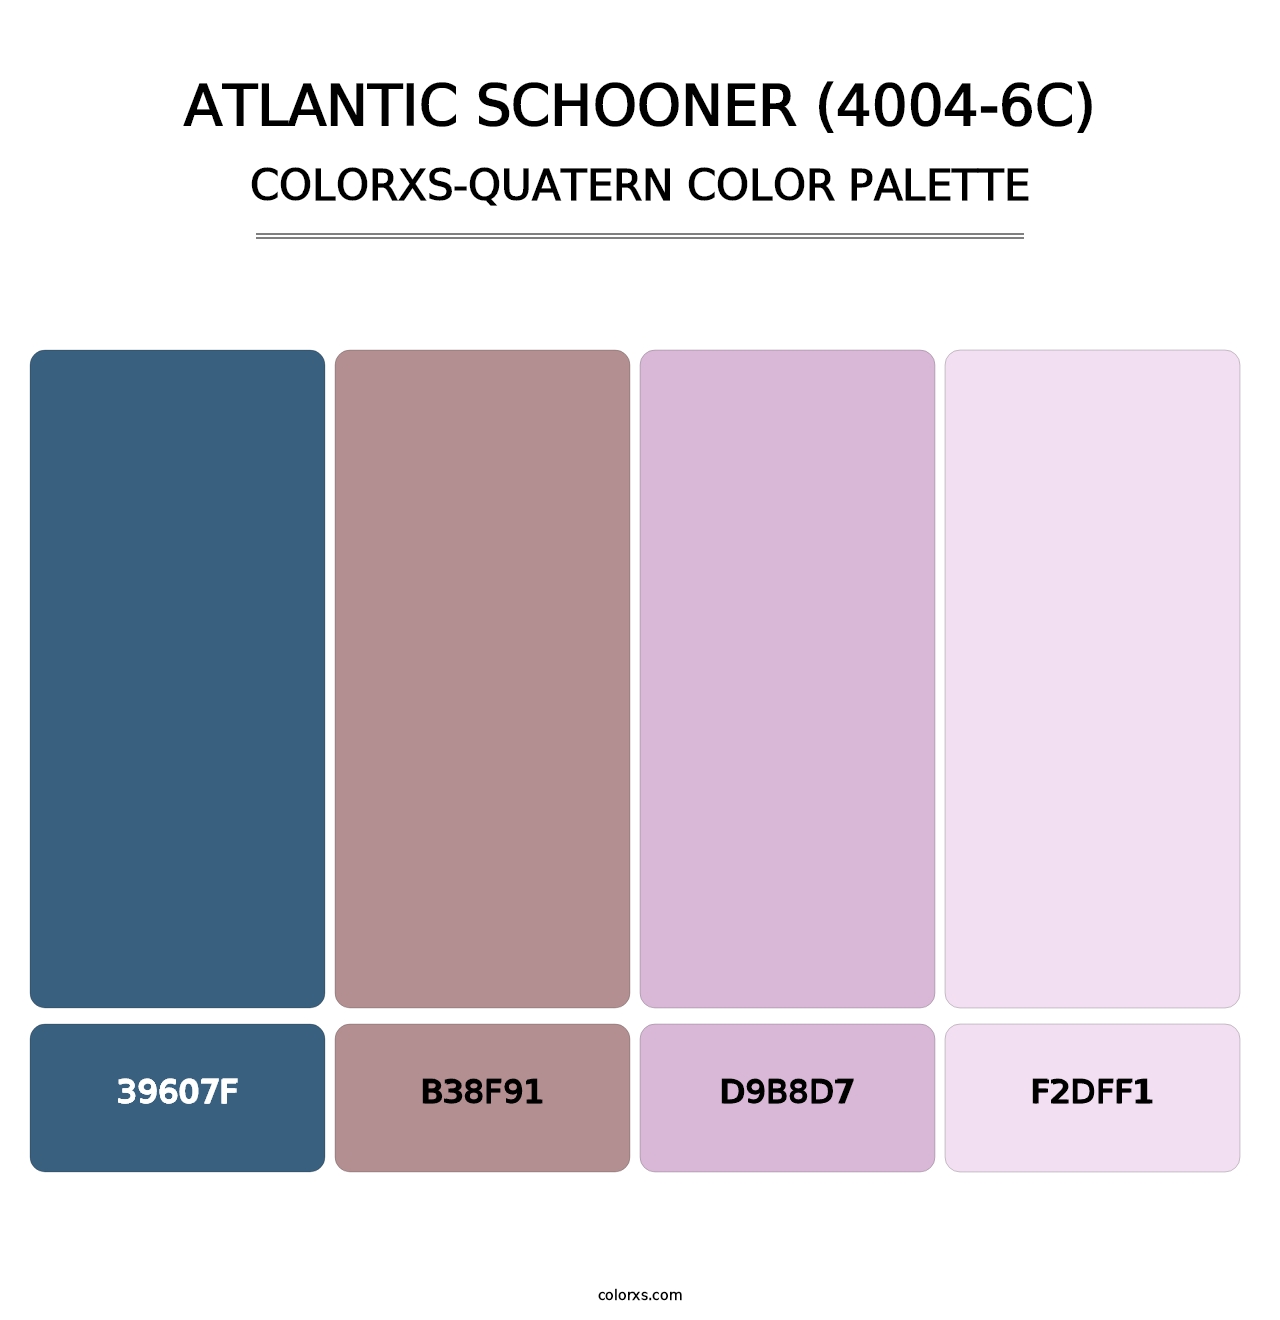 Atlantic Schooner (4004-6C) - Colorxs Quatern Palette